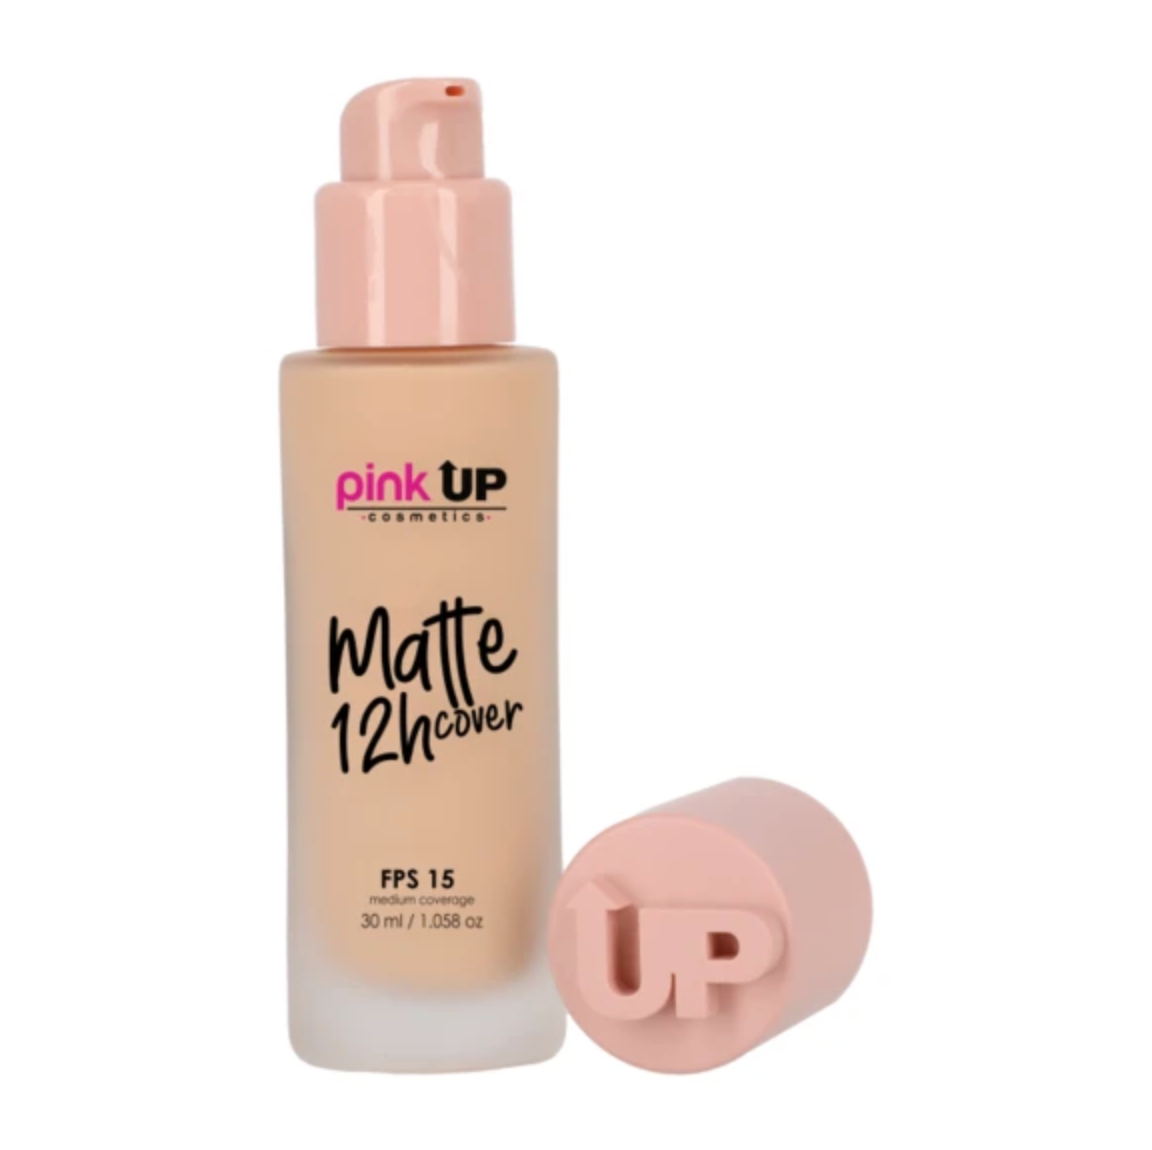 Maquillaje Líquido de Cobertura Media, Matte 12 Hrs. Pink Up